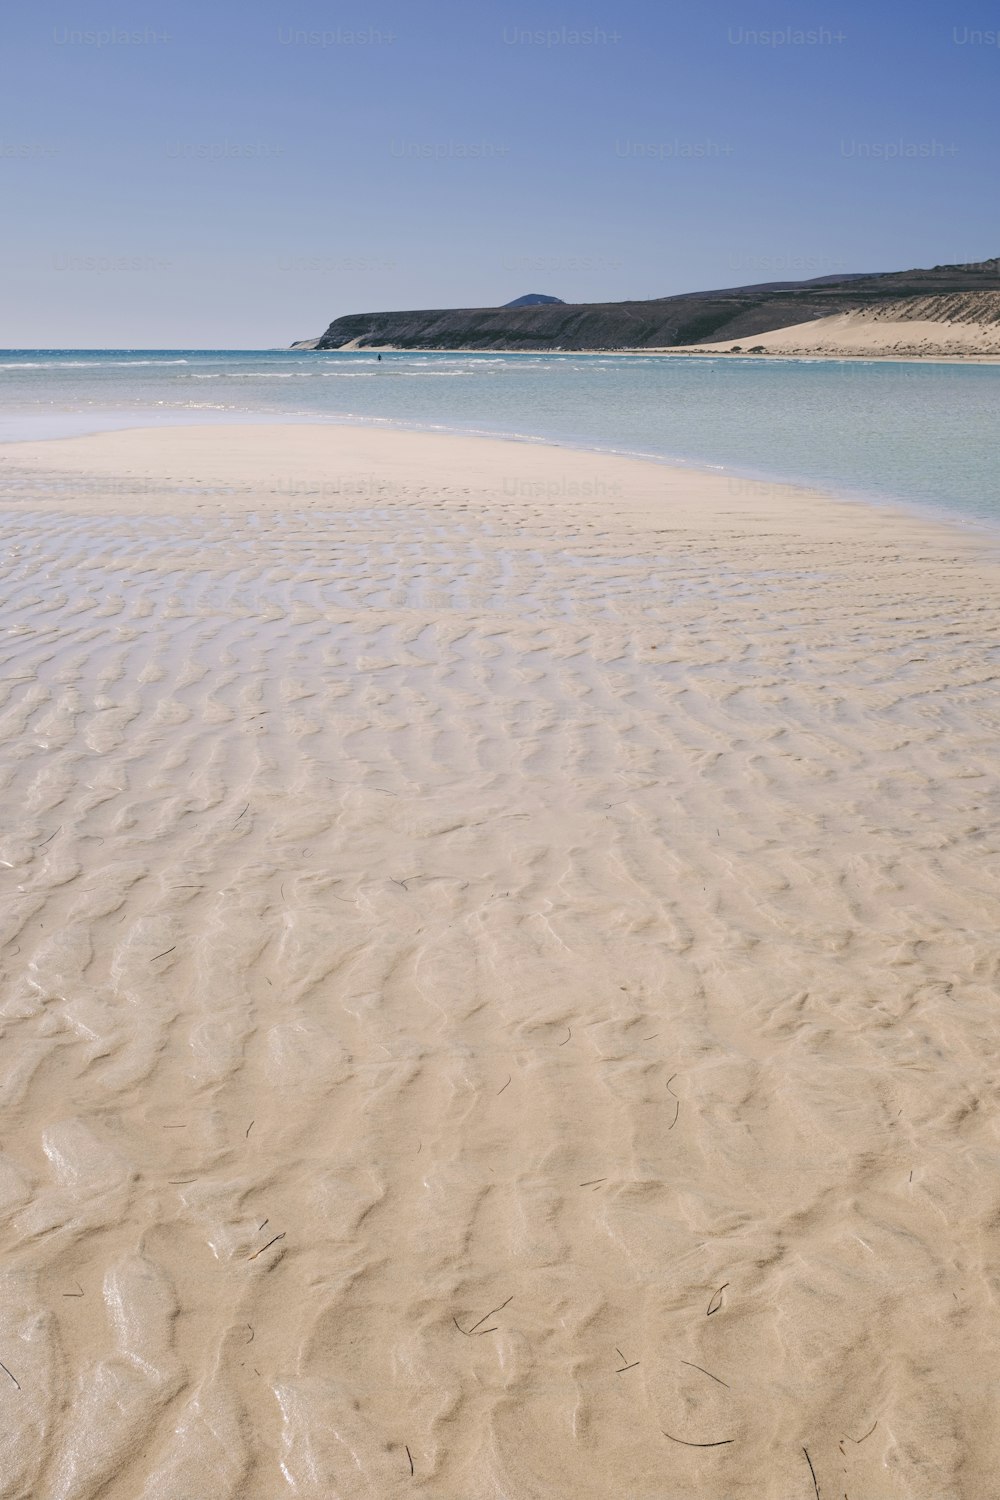 Paysage de sable et de plage avec de l’eau de mer tropicale propre et transparente. Ciel bleu en arrière-plan. Concept de voyage d’été, vacances, vacances, lieu pittoresque